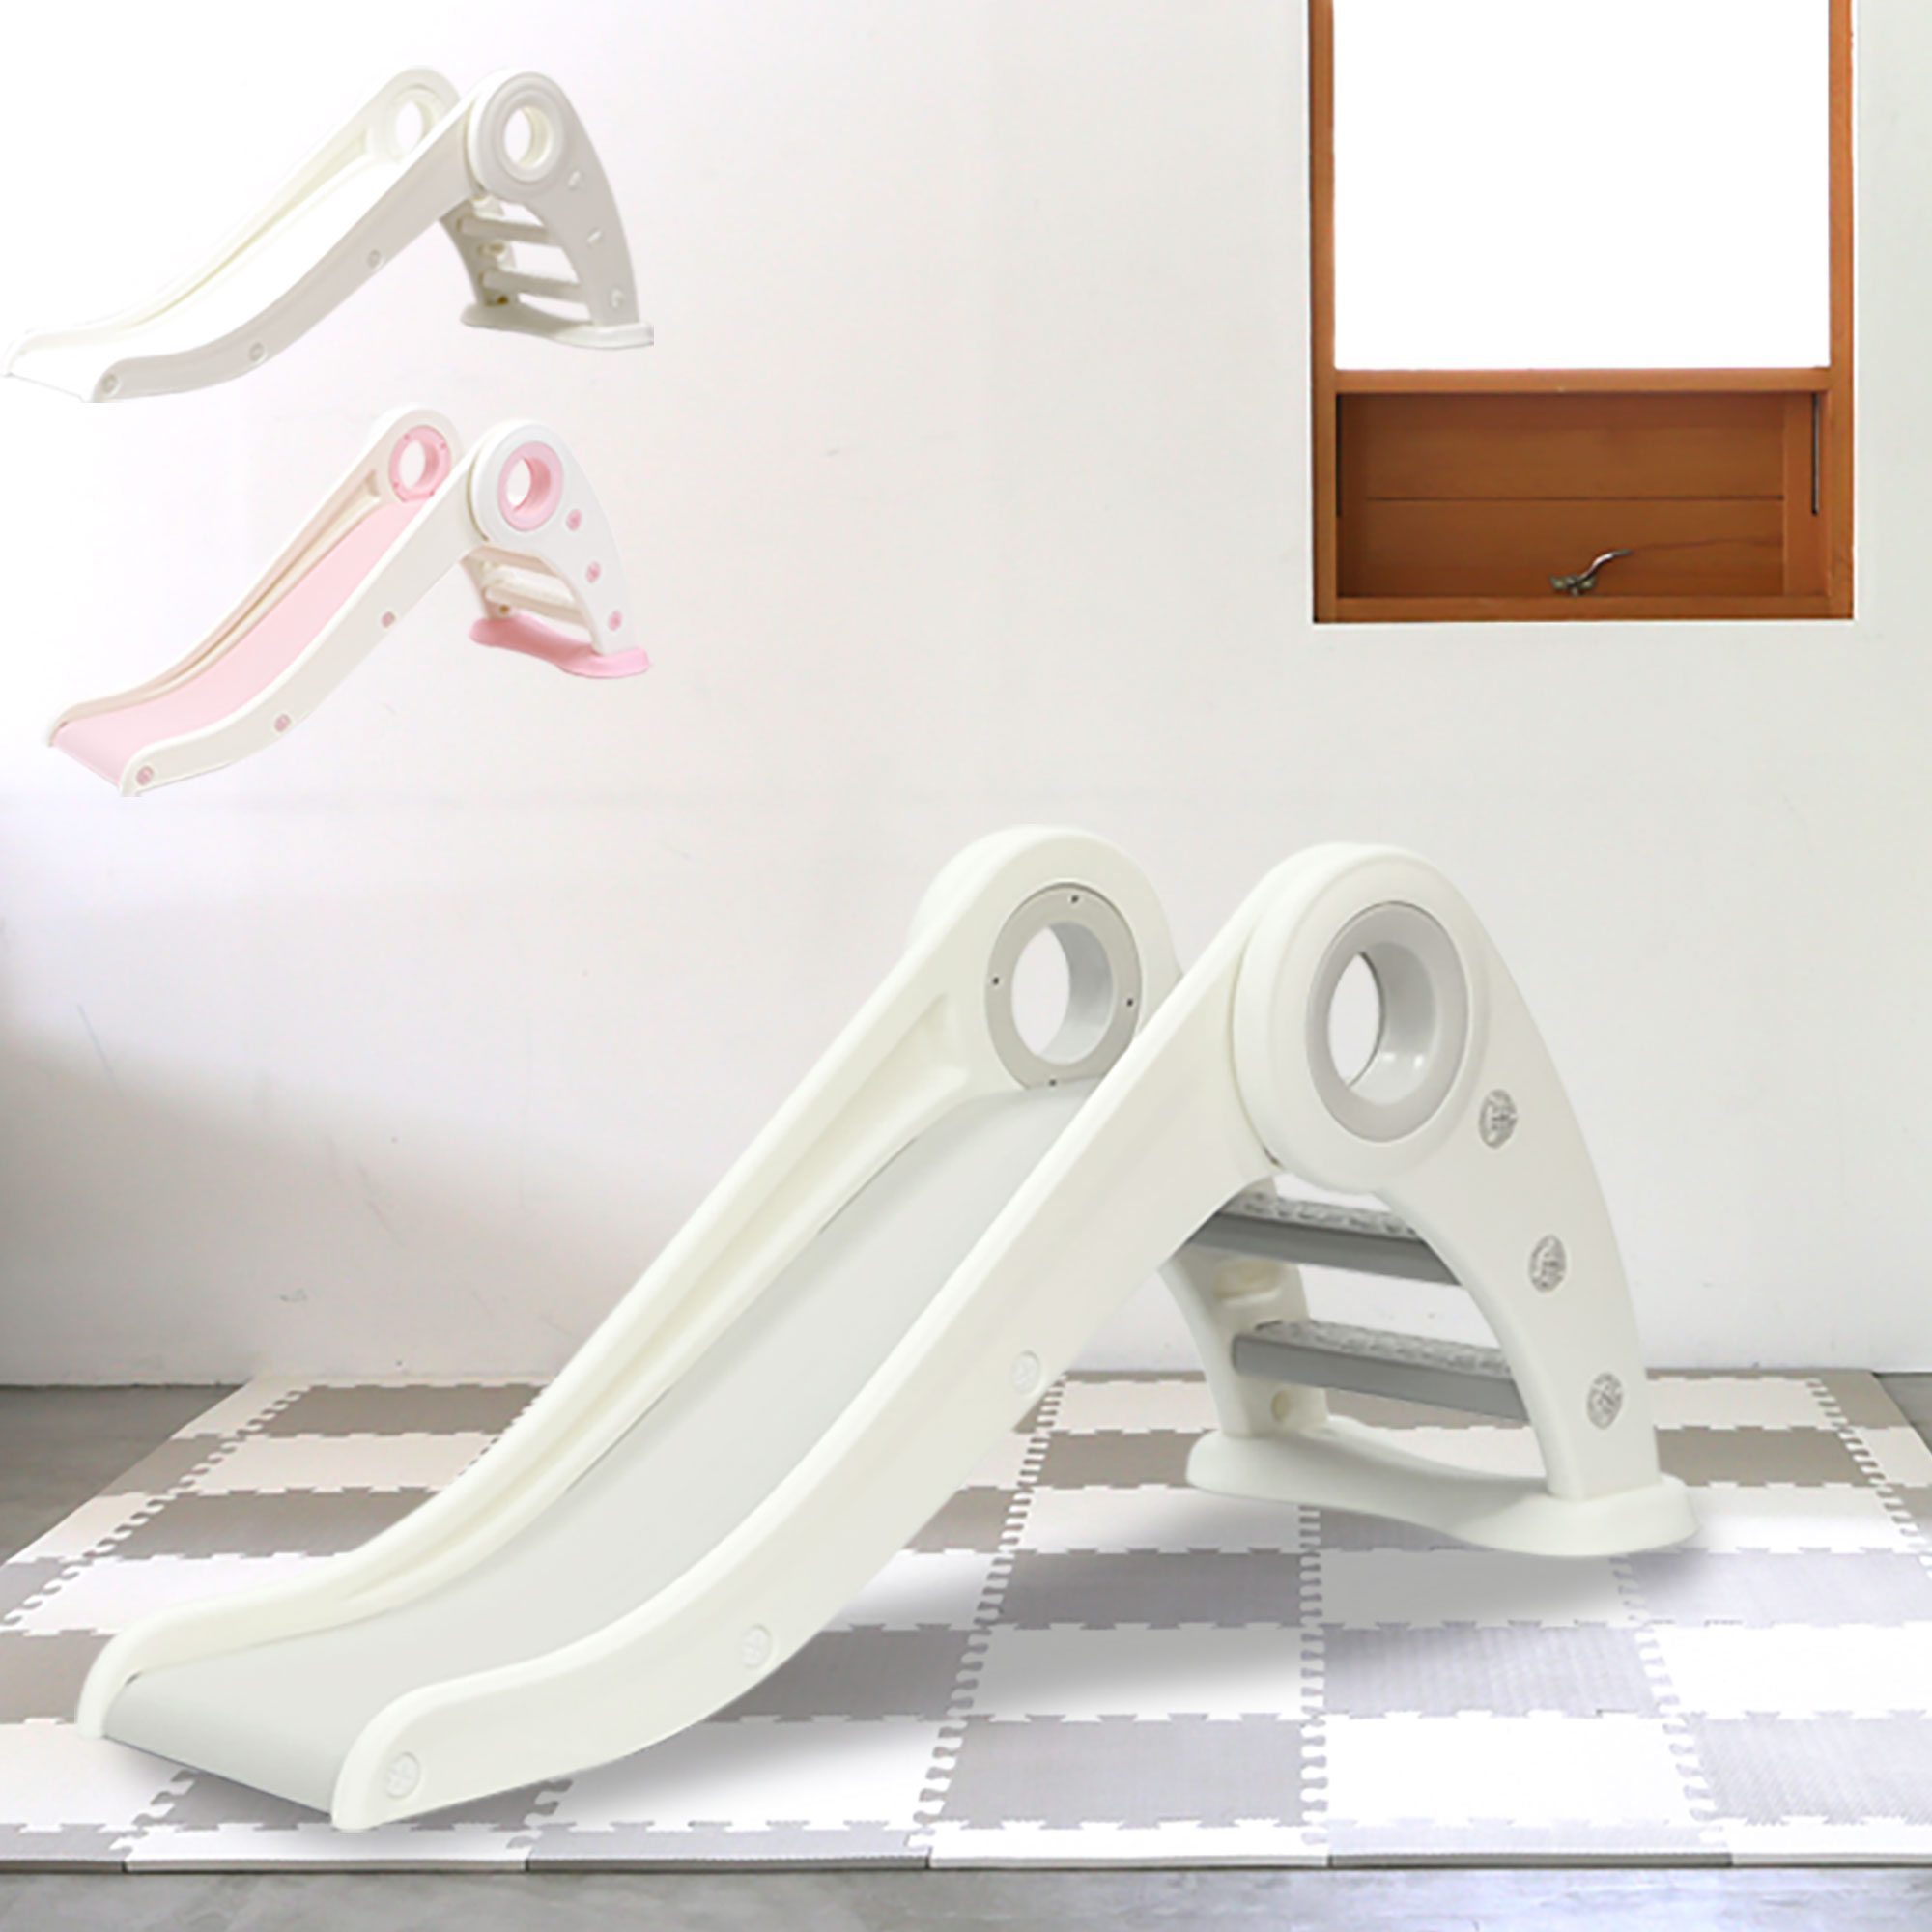 すべり台 ロングスロープ すべりだい 折りたたみできる スムーススロープ なだらか インテリアグレー ピンク ホワイト 折り畳み 室内遊具  【ラッピング不可】 | 赤ちゃんデパート